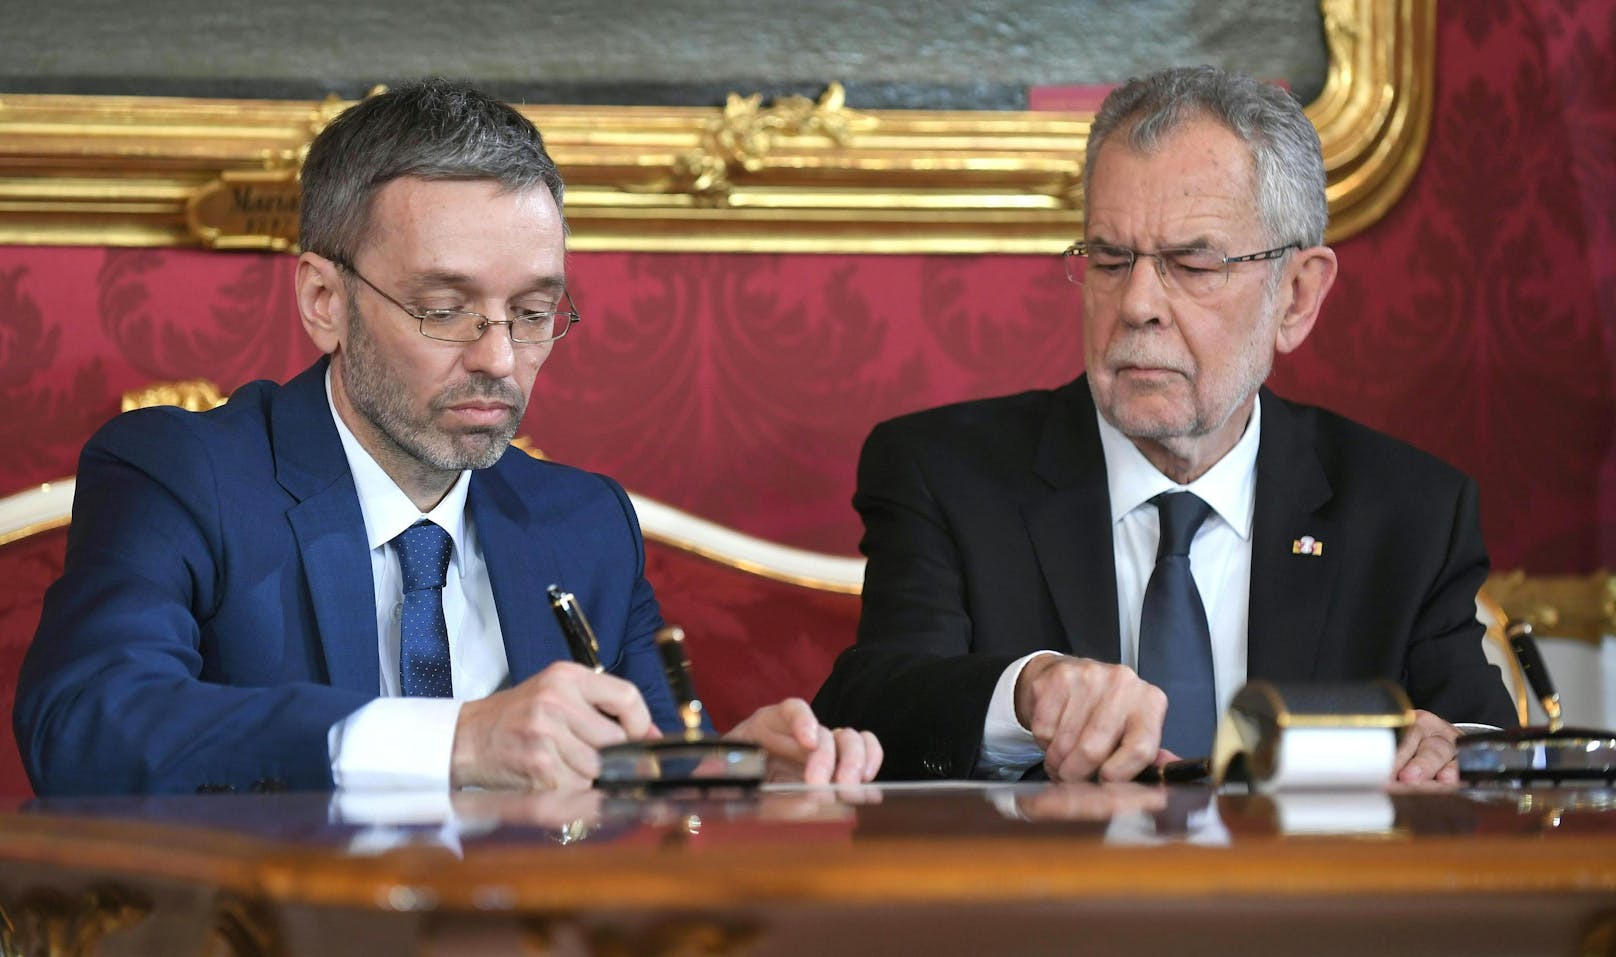 Herbert Kickl (FPÖ) und Bundespräsident Alexander Van der Bellen im Rahmen der Angelobung der ÖVP-FPÖ-Bundesregierung 2017.